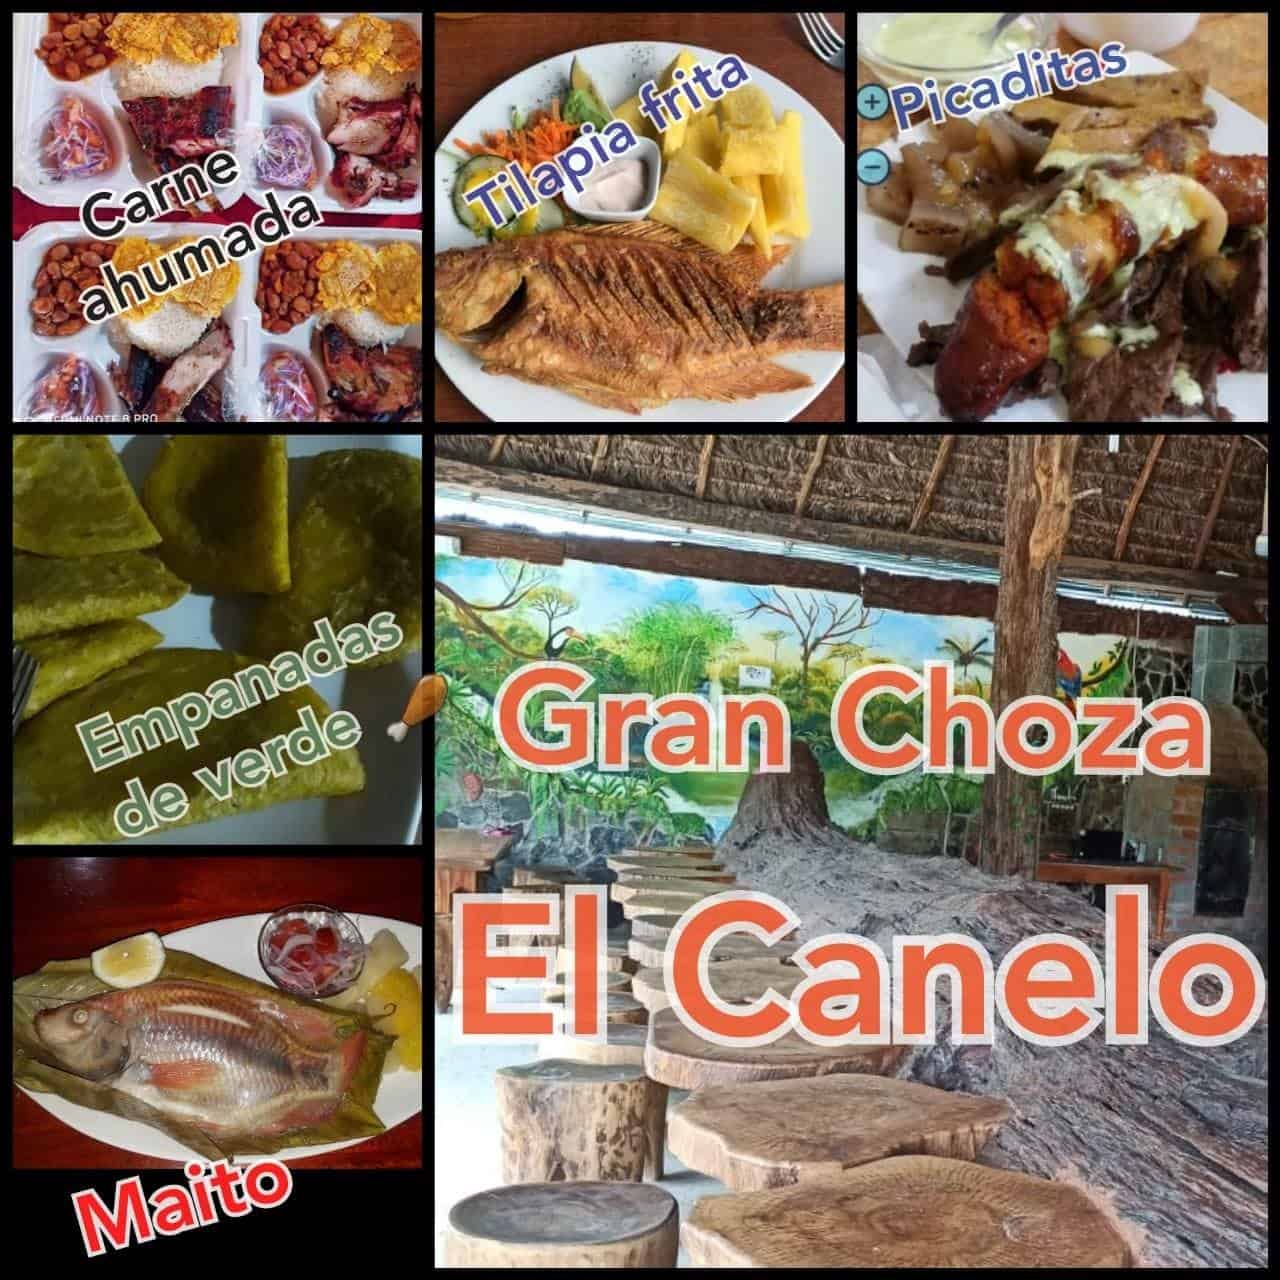 Choza El Canelo